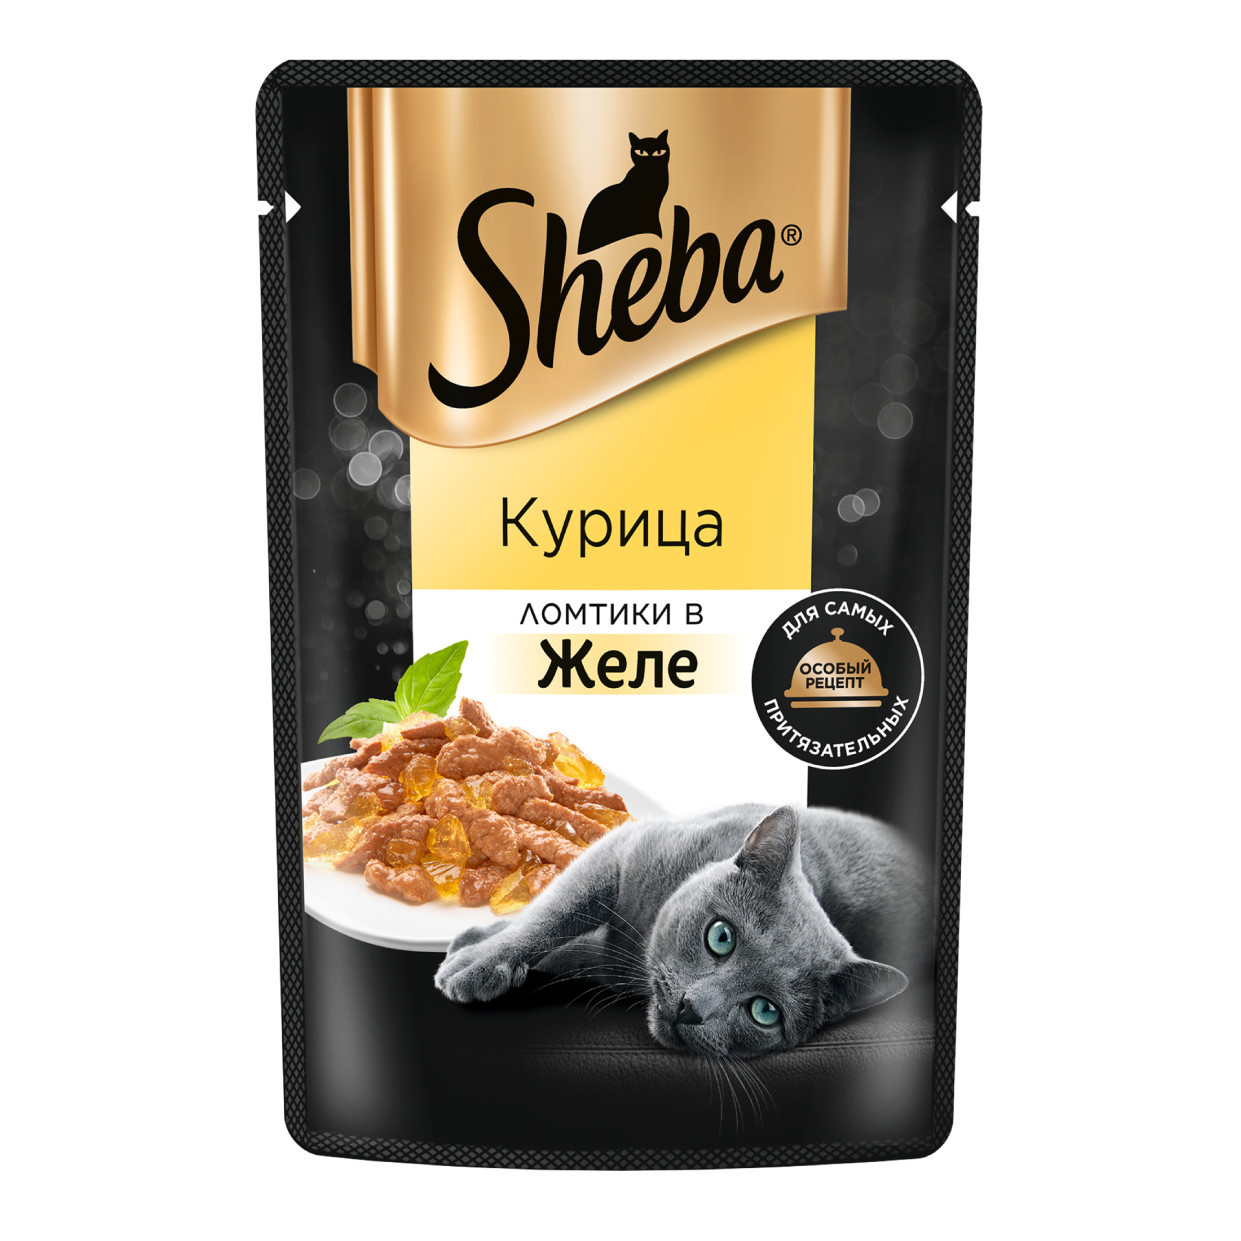 Sheba Sheba влажный корм для кошек «Ломтики в желе с курицей» (75 г)